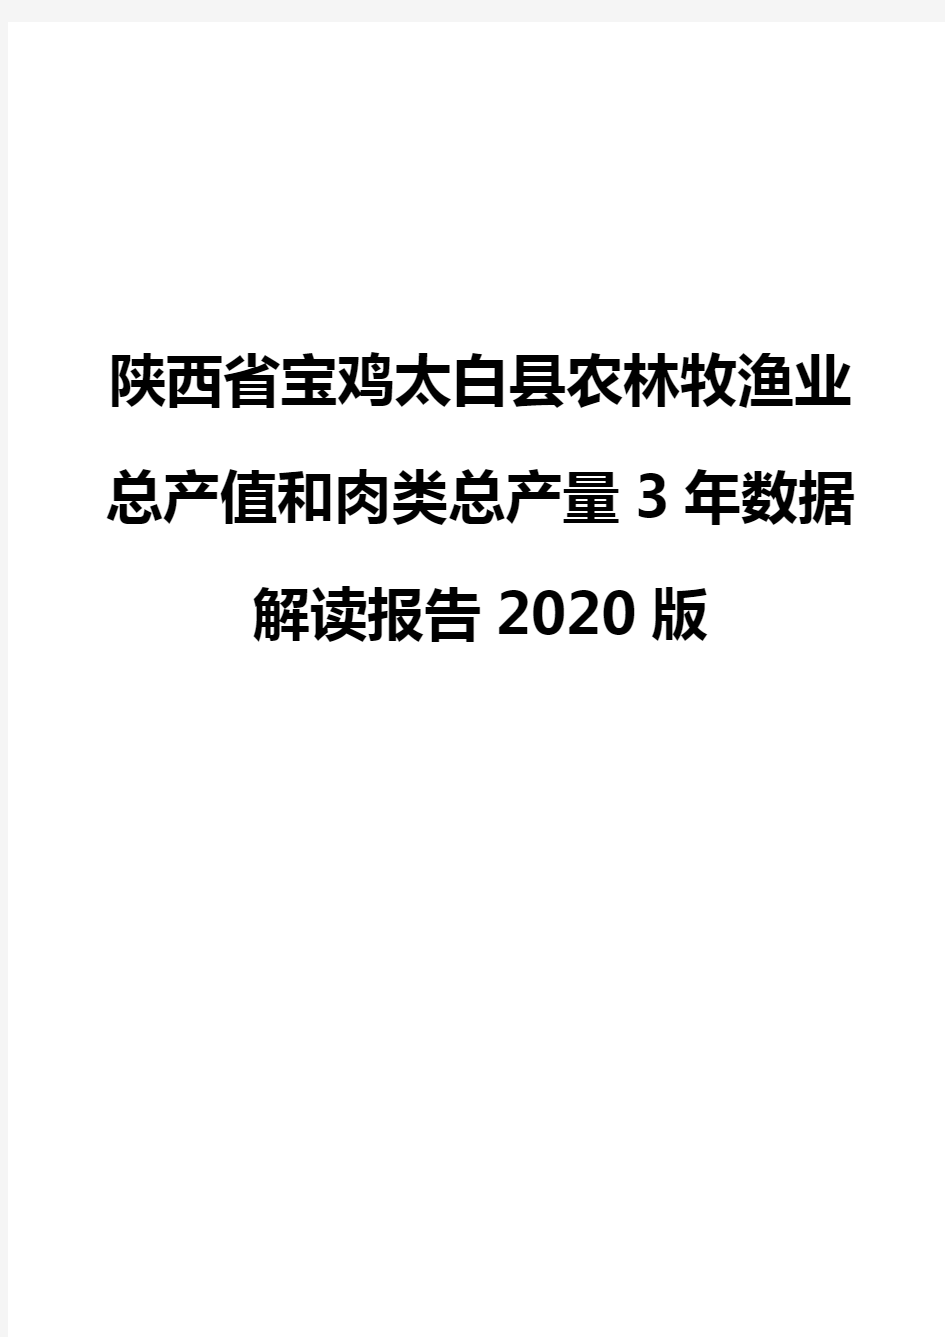 陕西省宝鸡太白县农林牧渔业总产值和肉类总产量3年数据解读报告2020版